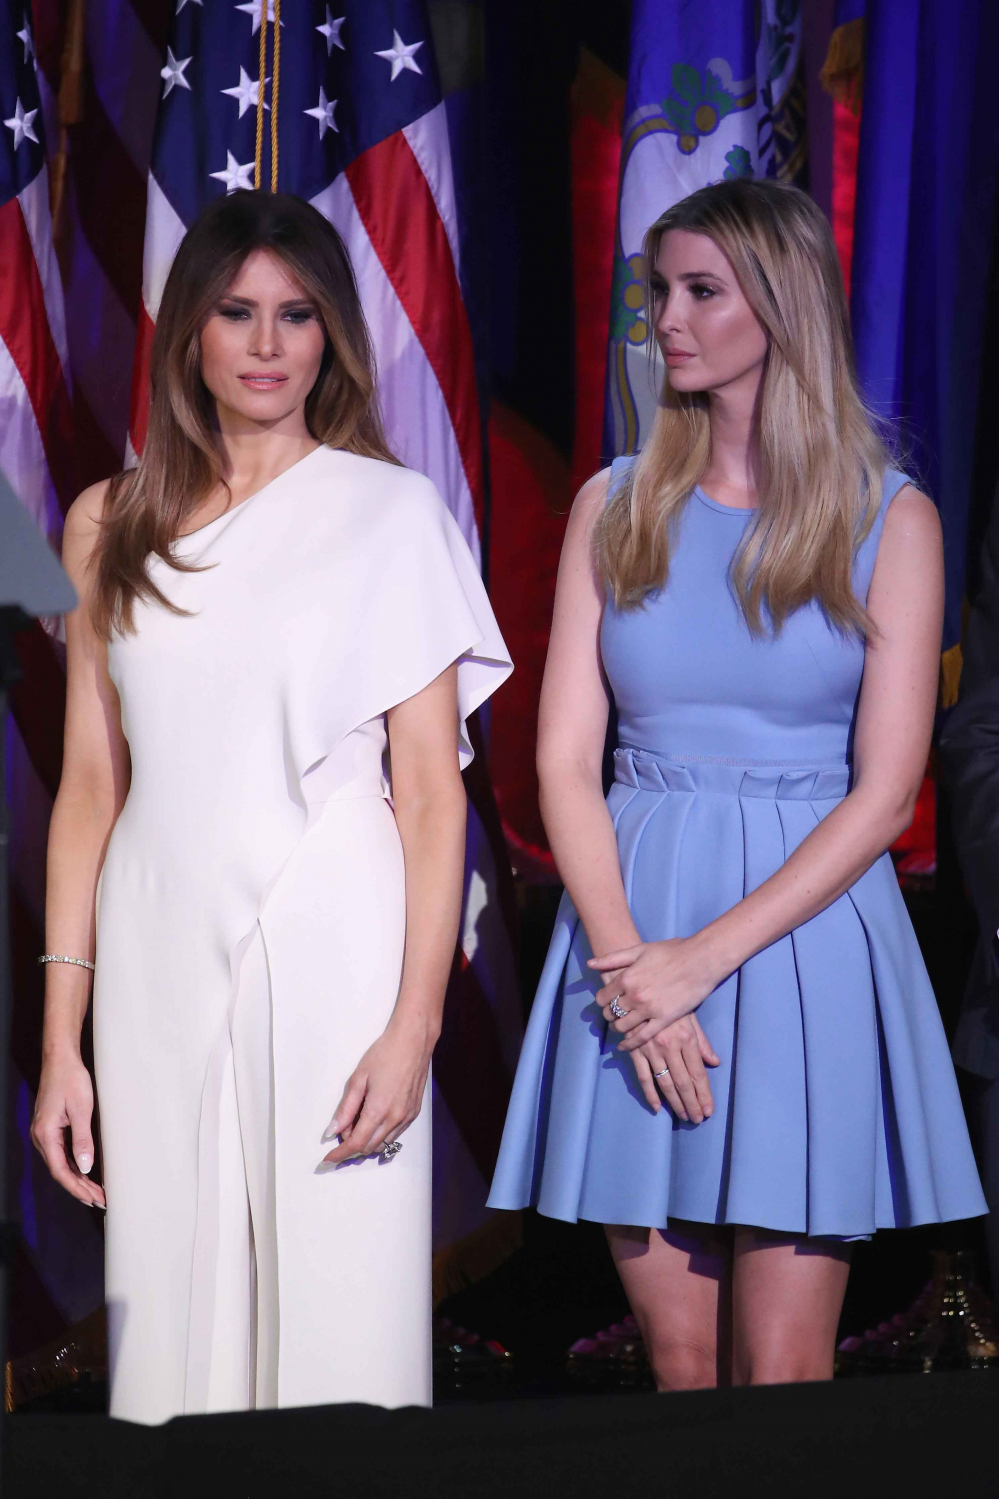 ái nữ, con gái tổng thống, con gái tổng thông trump